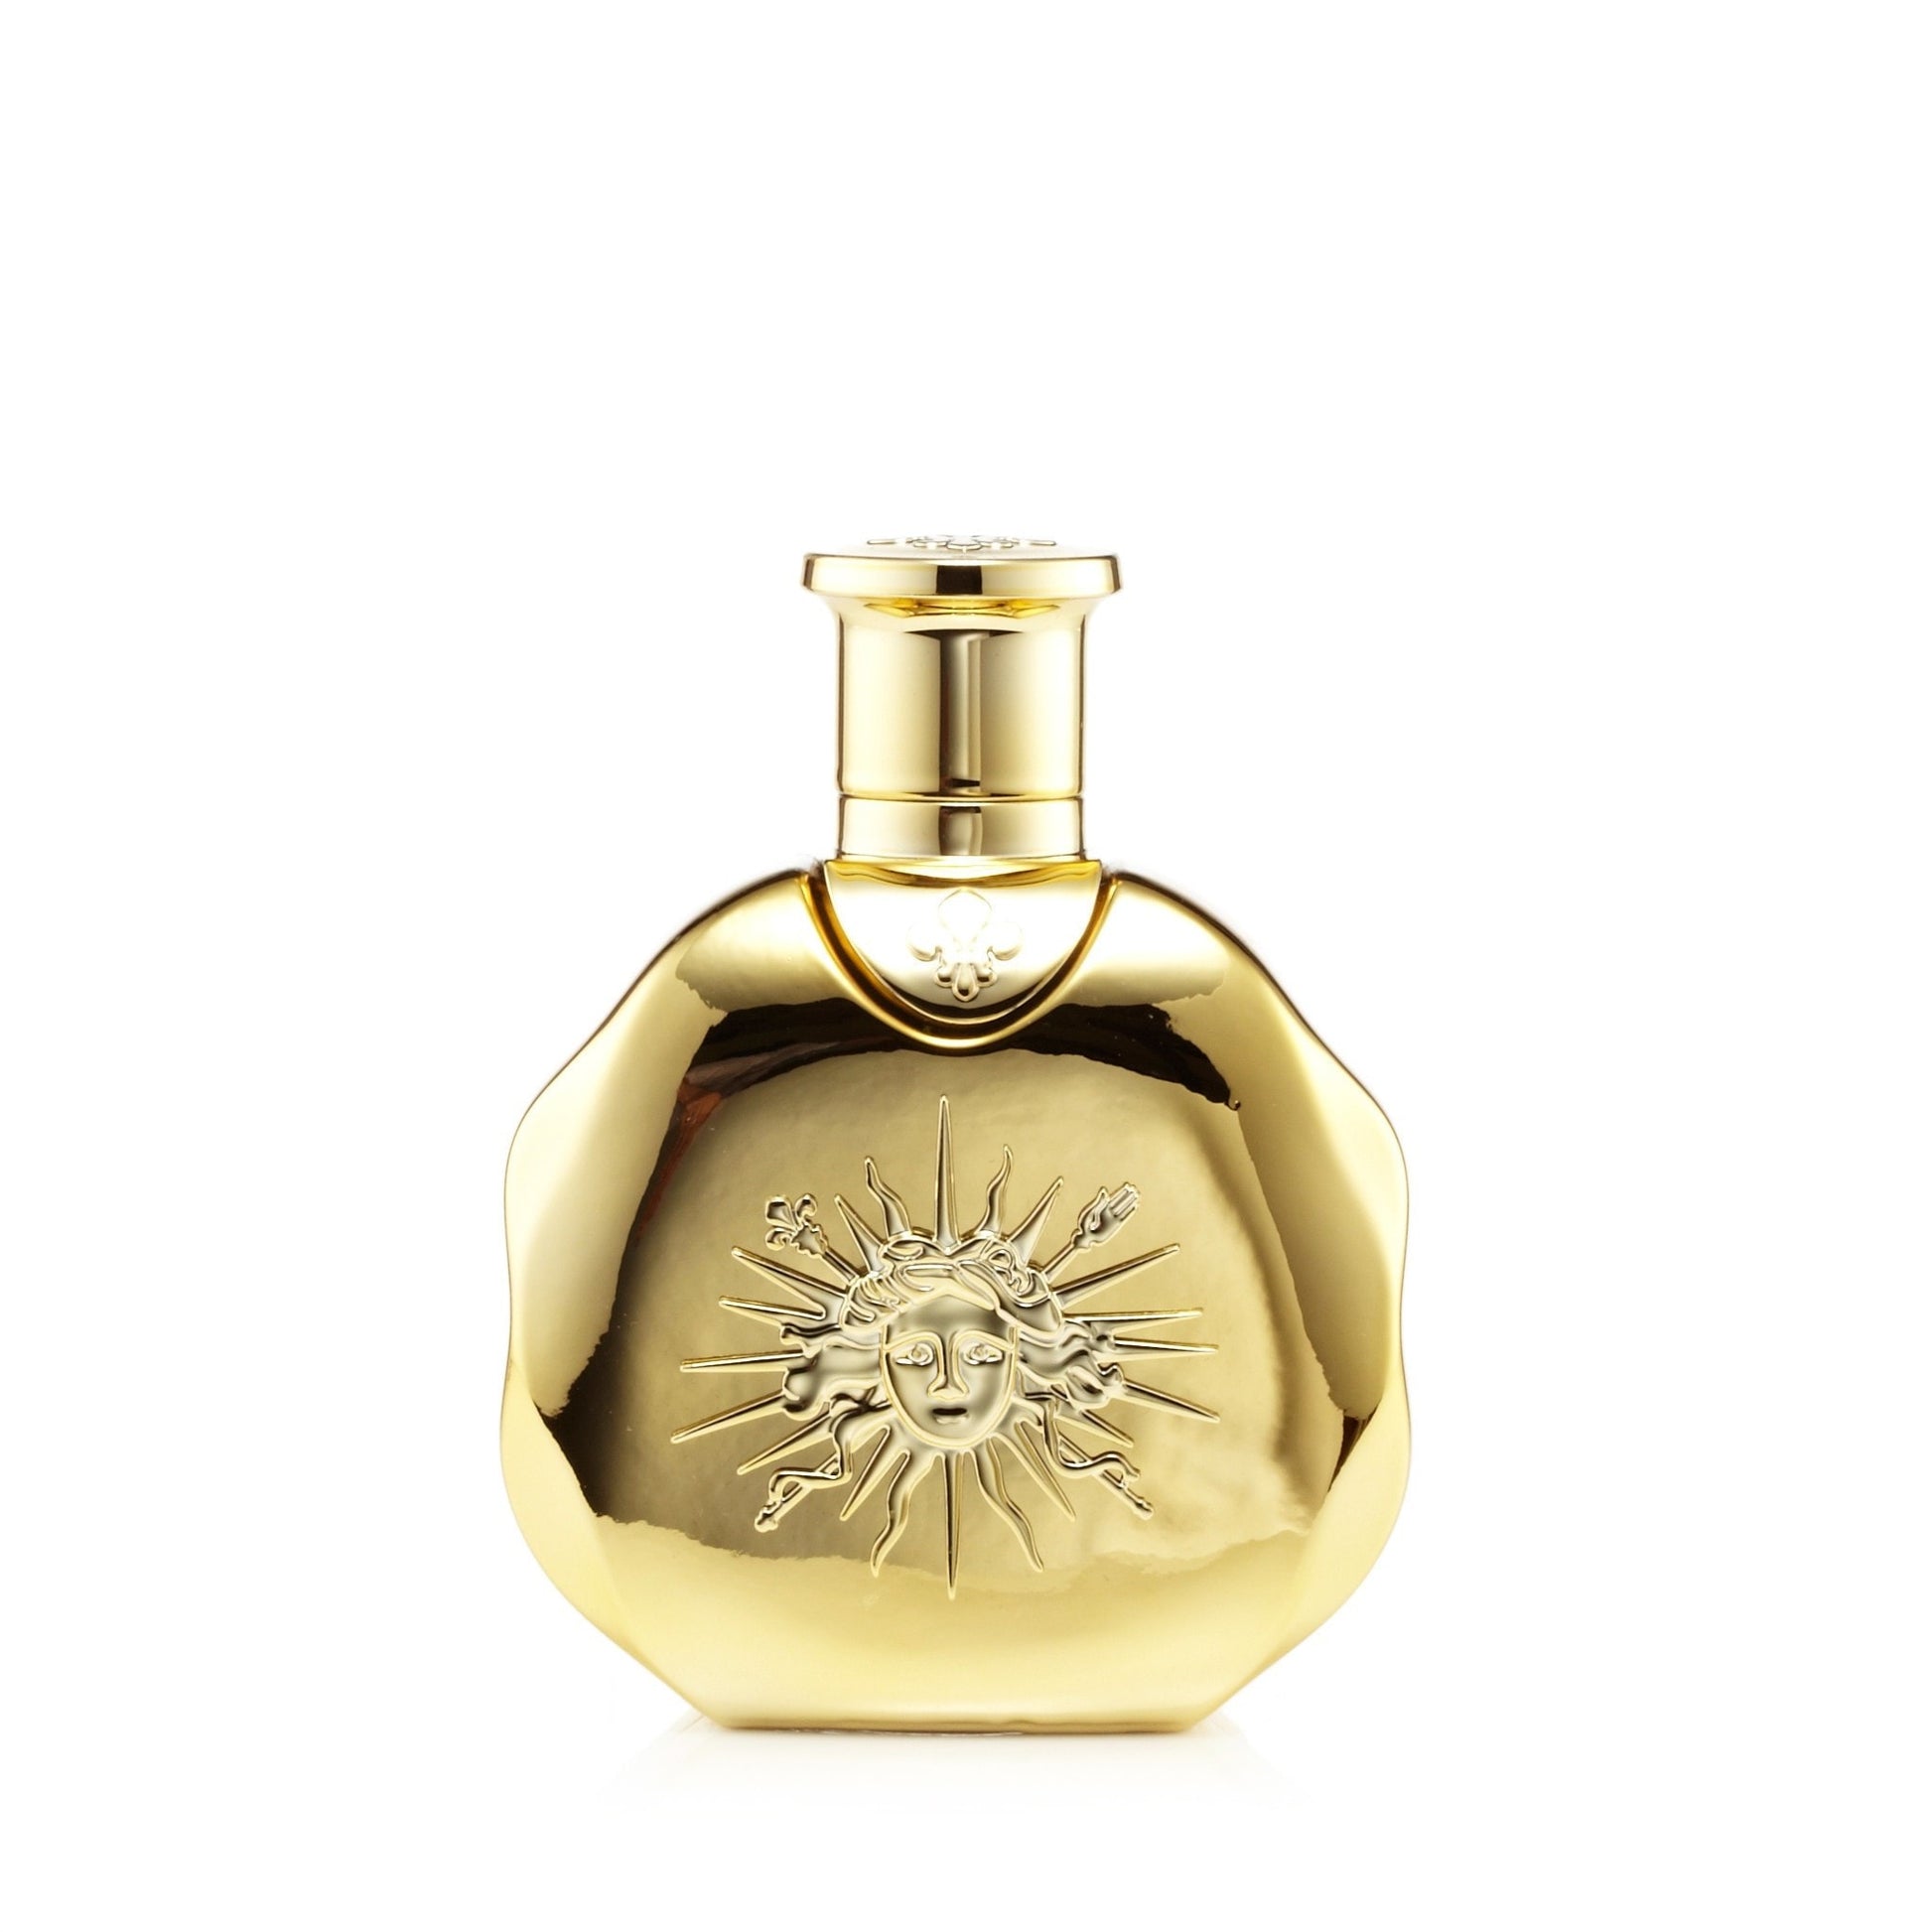 Les Ors De Versailles Pour Elle Eau de Parfum Womens Spray 3.4 oz. Click to open in modal